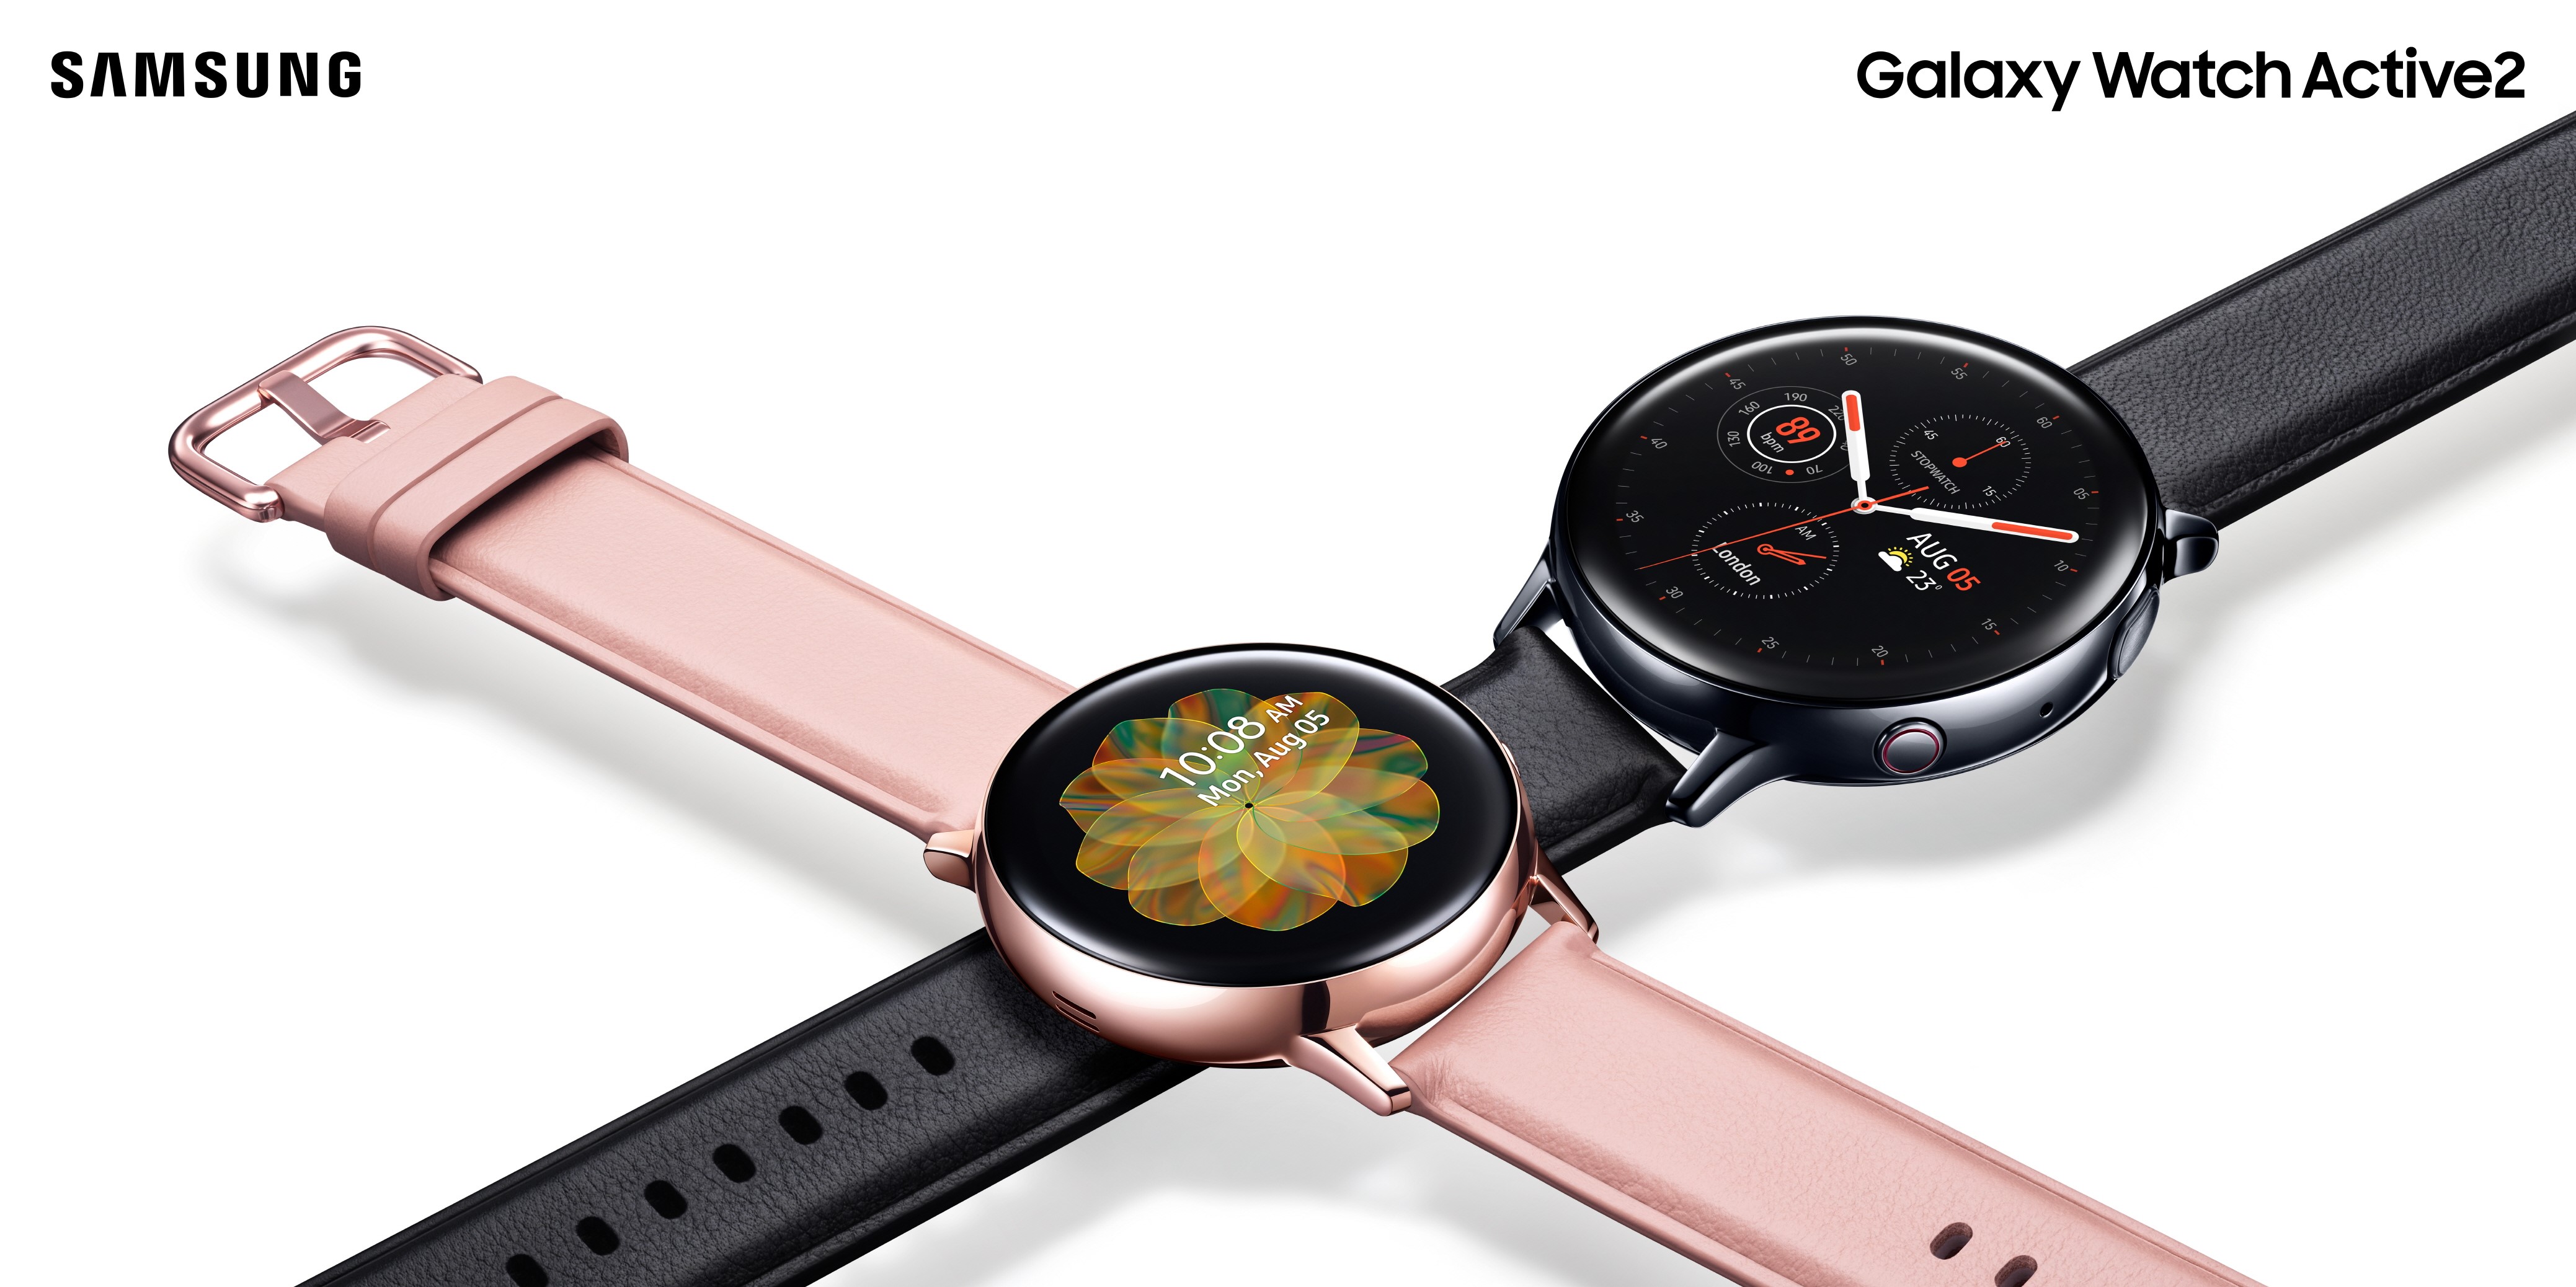 【快訊報報】自訂今天的搭配造型！Samsung Galaxy Watch Active 2 搭載 My Style 色彩擷取 任選錶面搭配專屬風格 - iOS - 科技狗 3C DOG